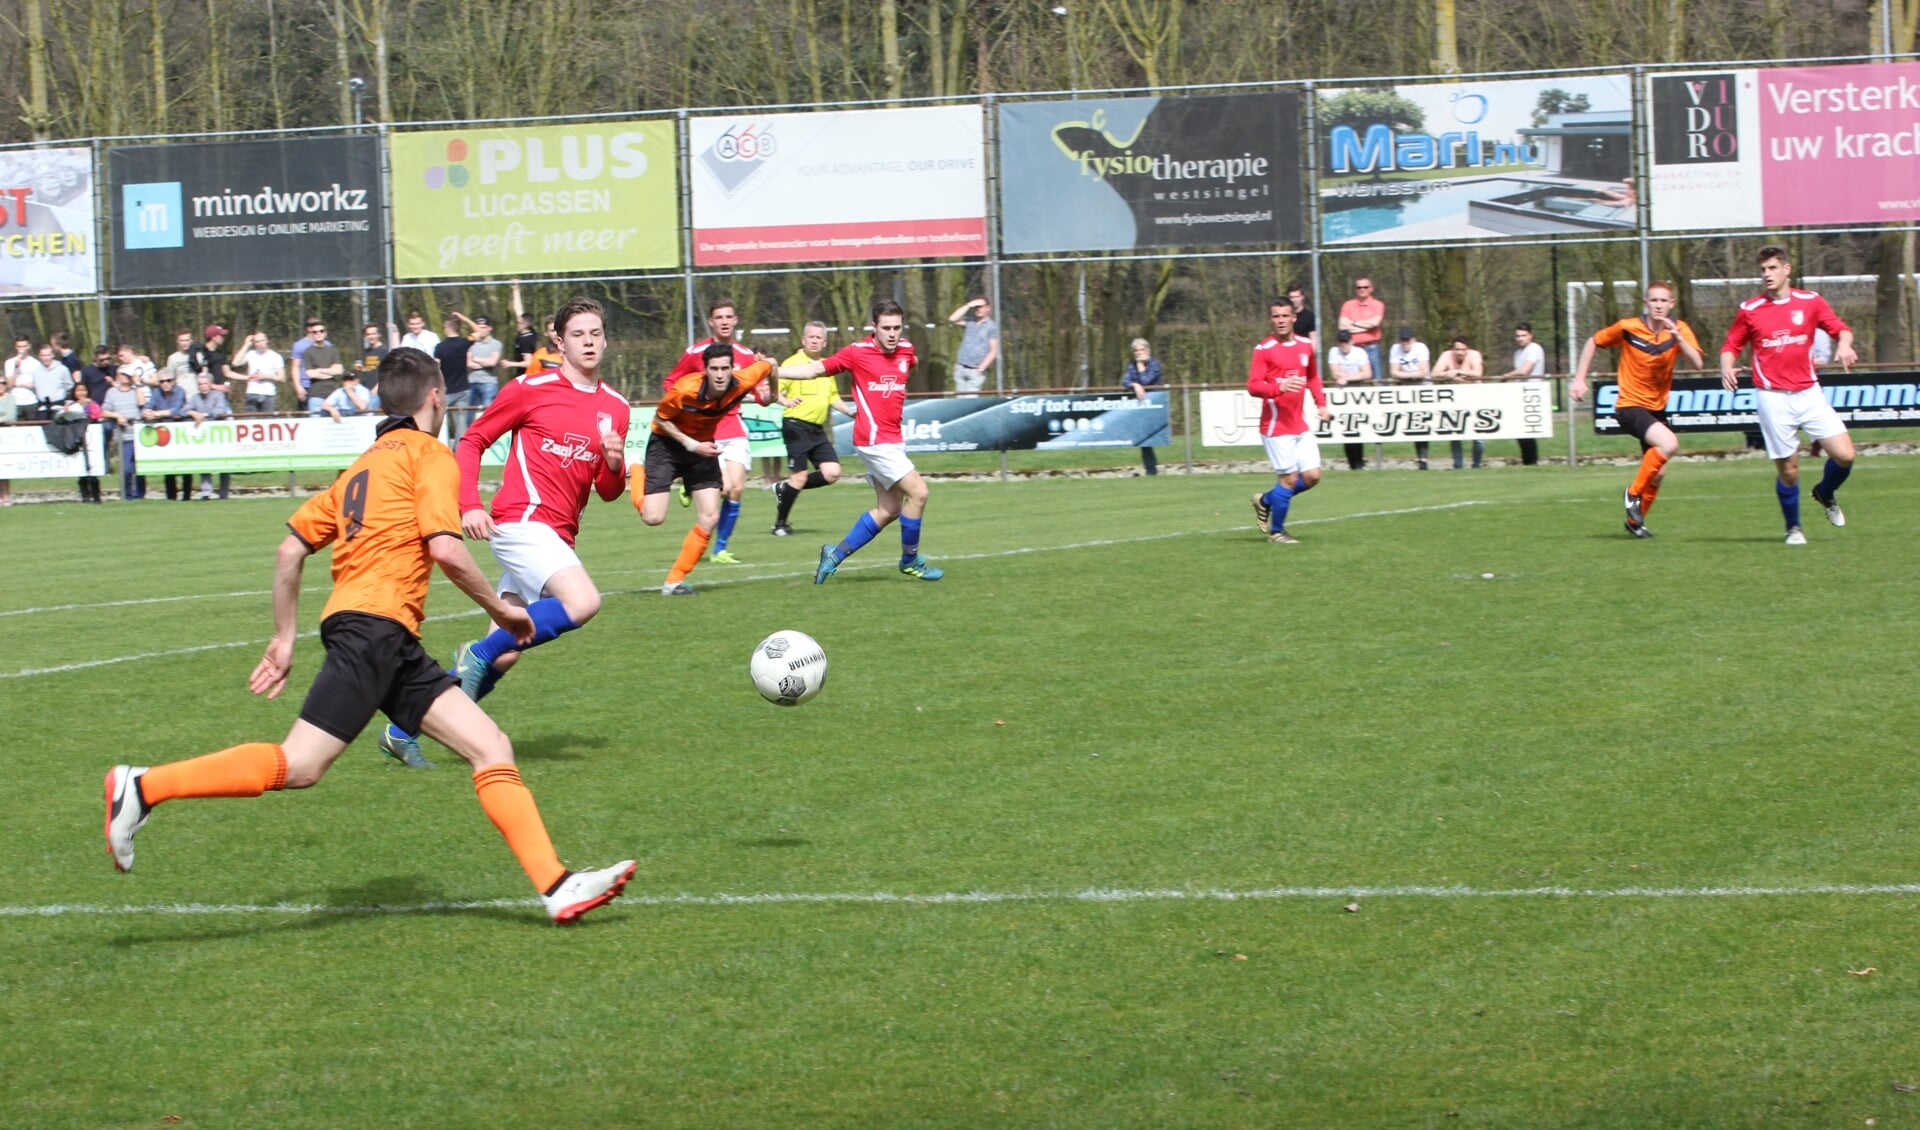 Venray verloor de derby tegen Wittenhorst met 2-1. Foto: Simone Swinkels